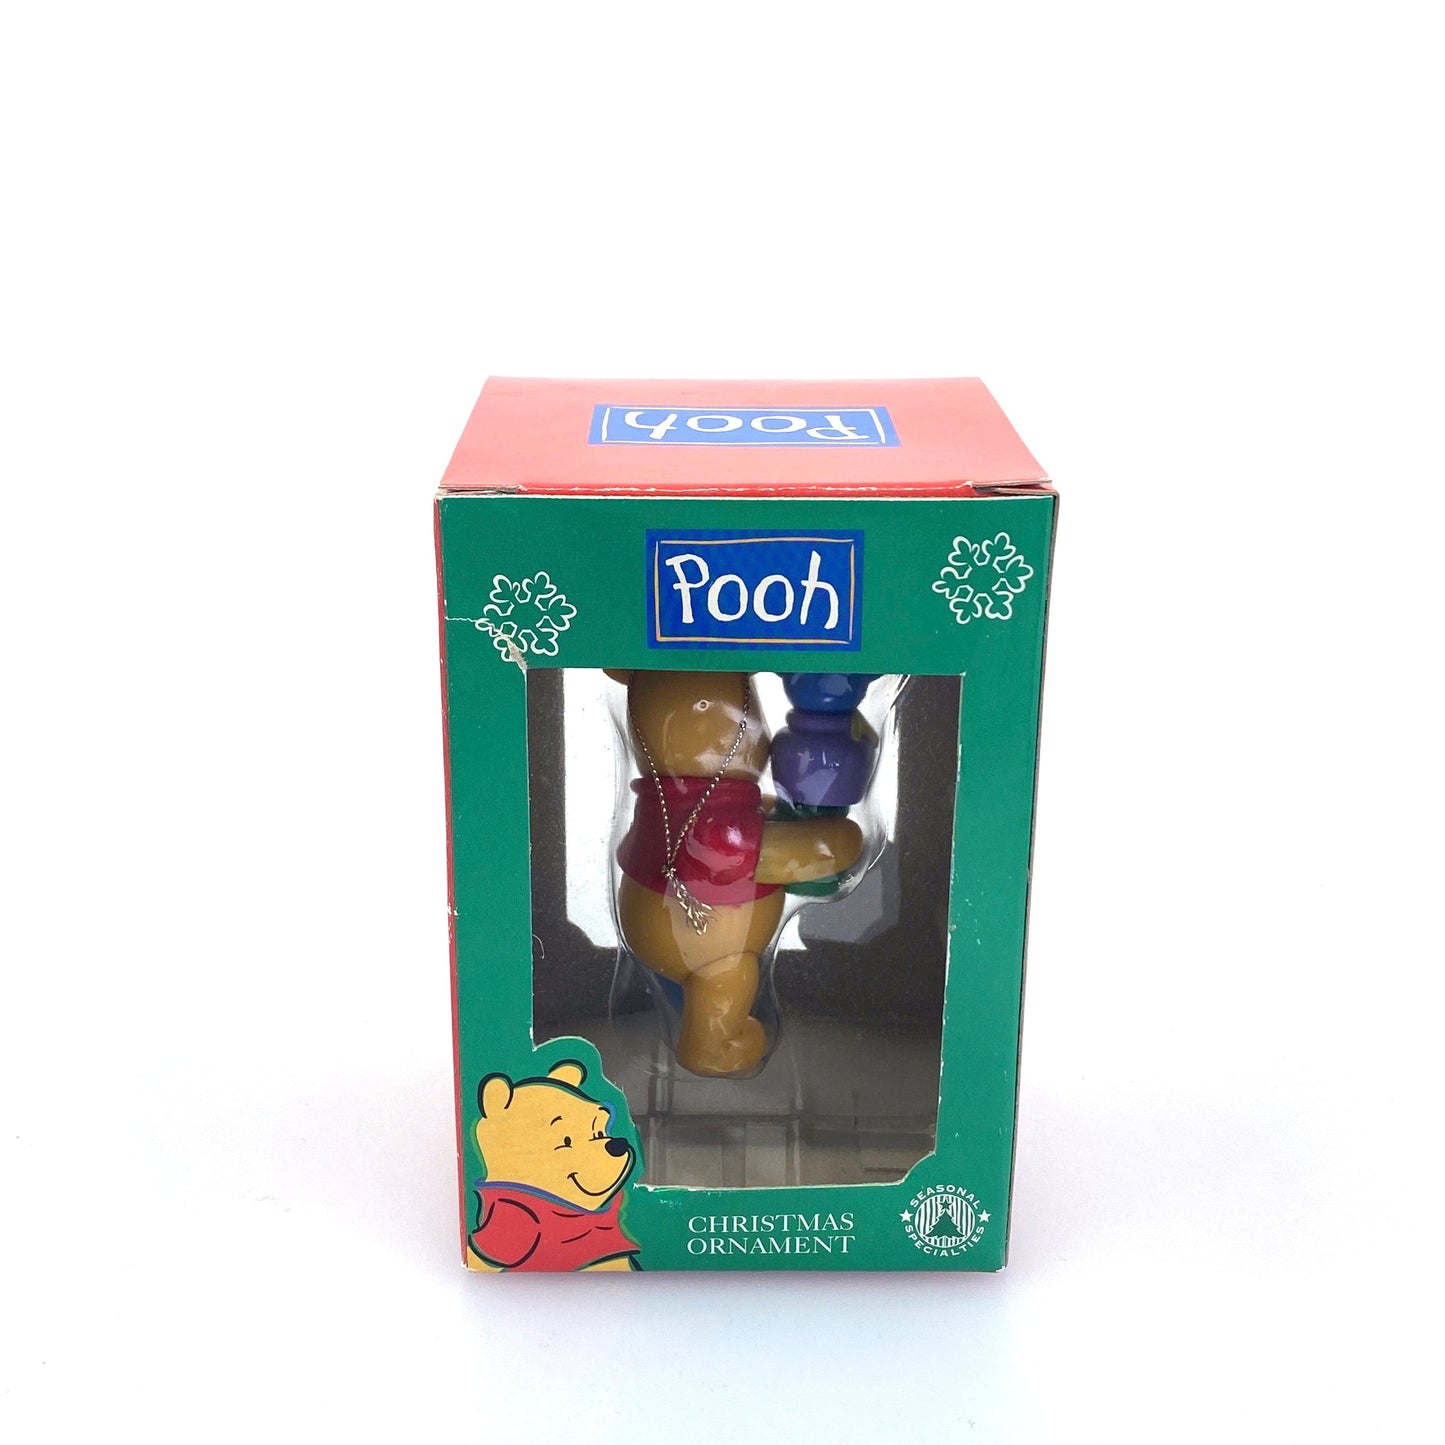 Seasonal Specialties Winne the Pooh “Honey Jars” Christmas Holiday Ornament Figurine